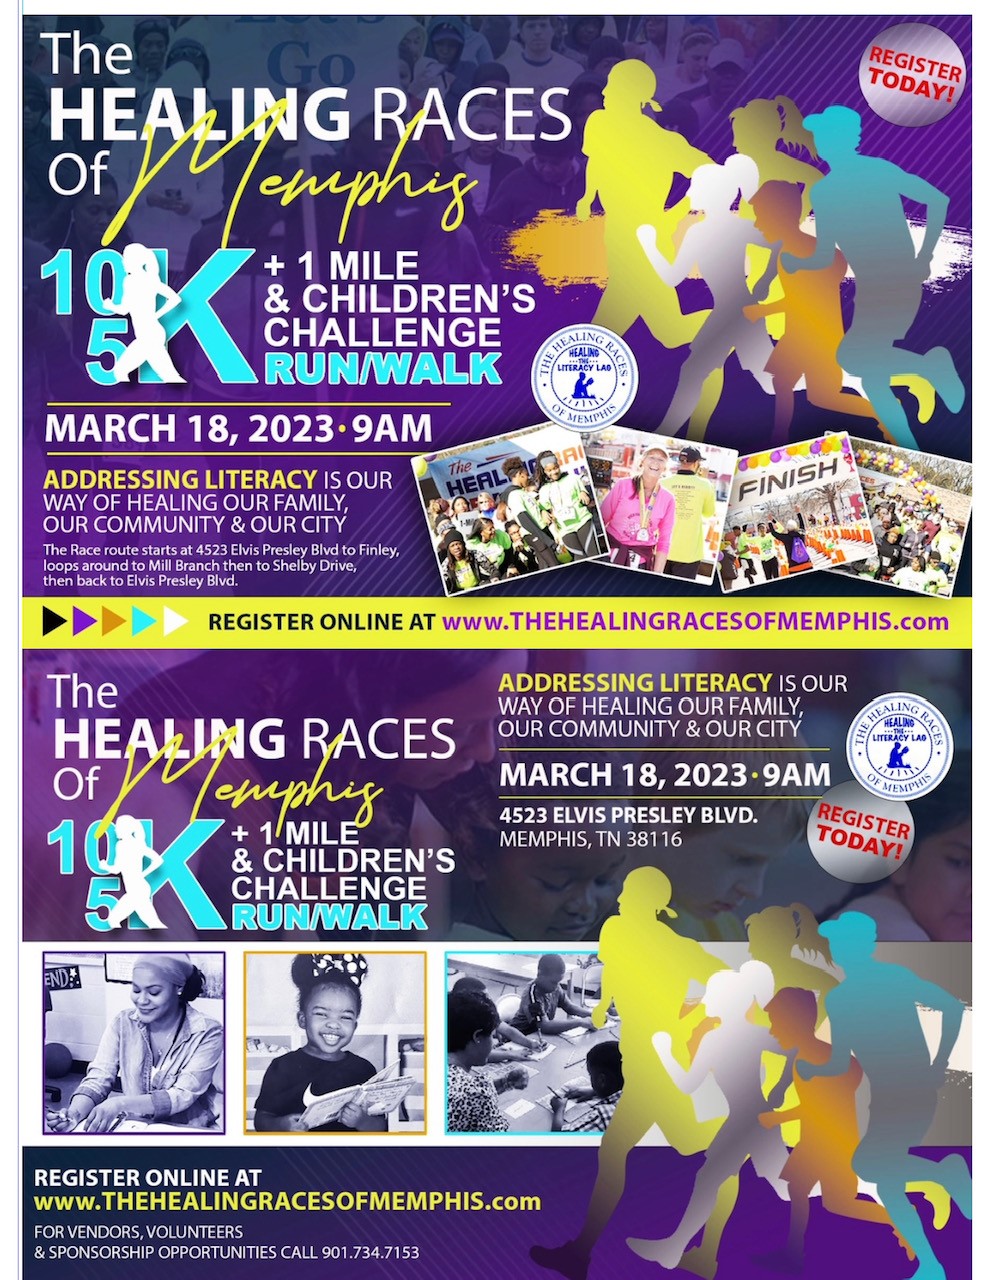 The Healing Races of Memphis 1 Mile, 5K, 10K, Children's Challenge